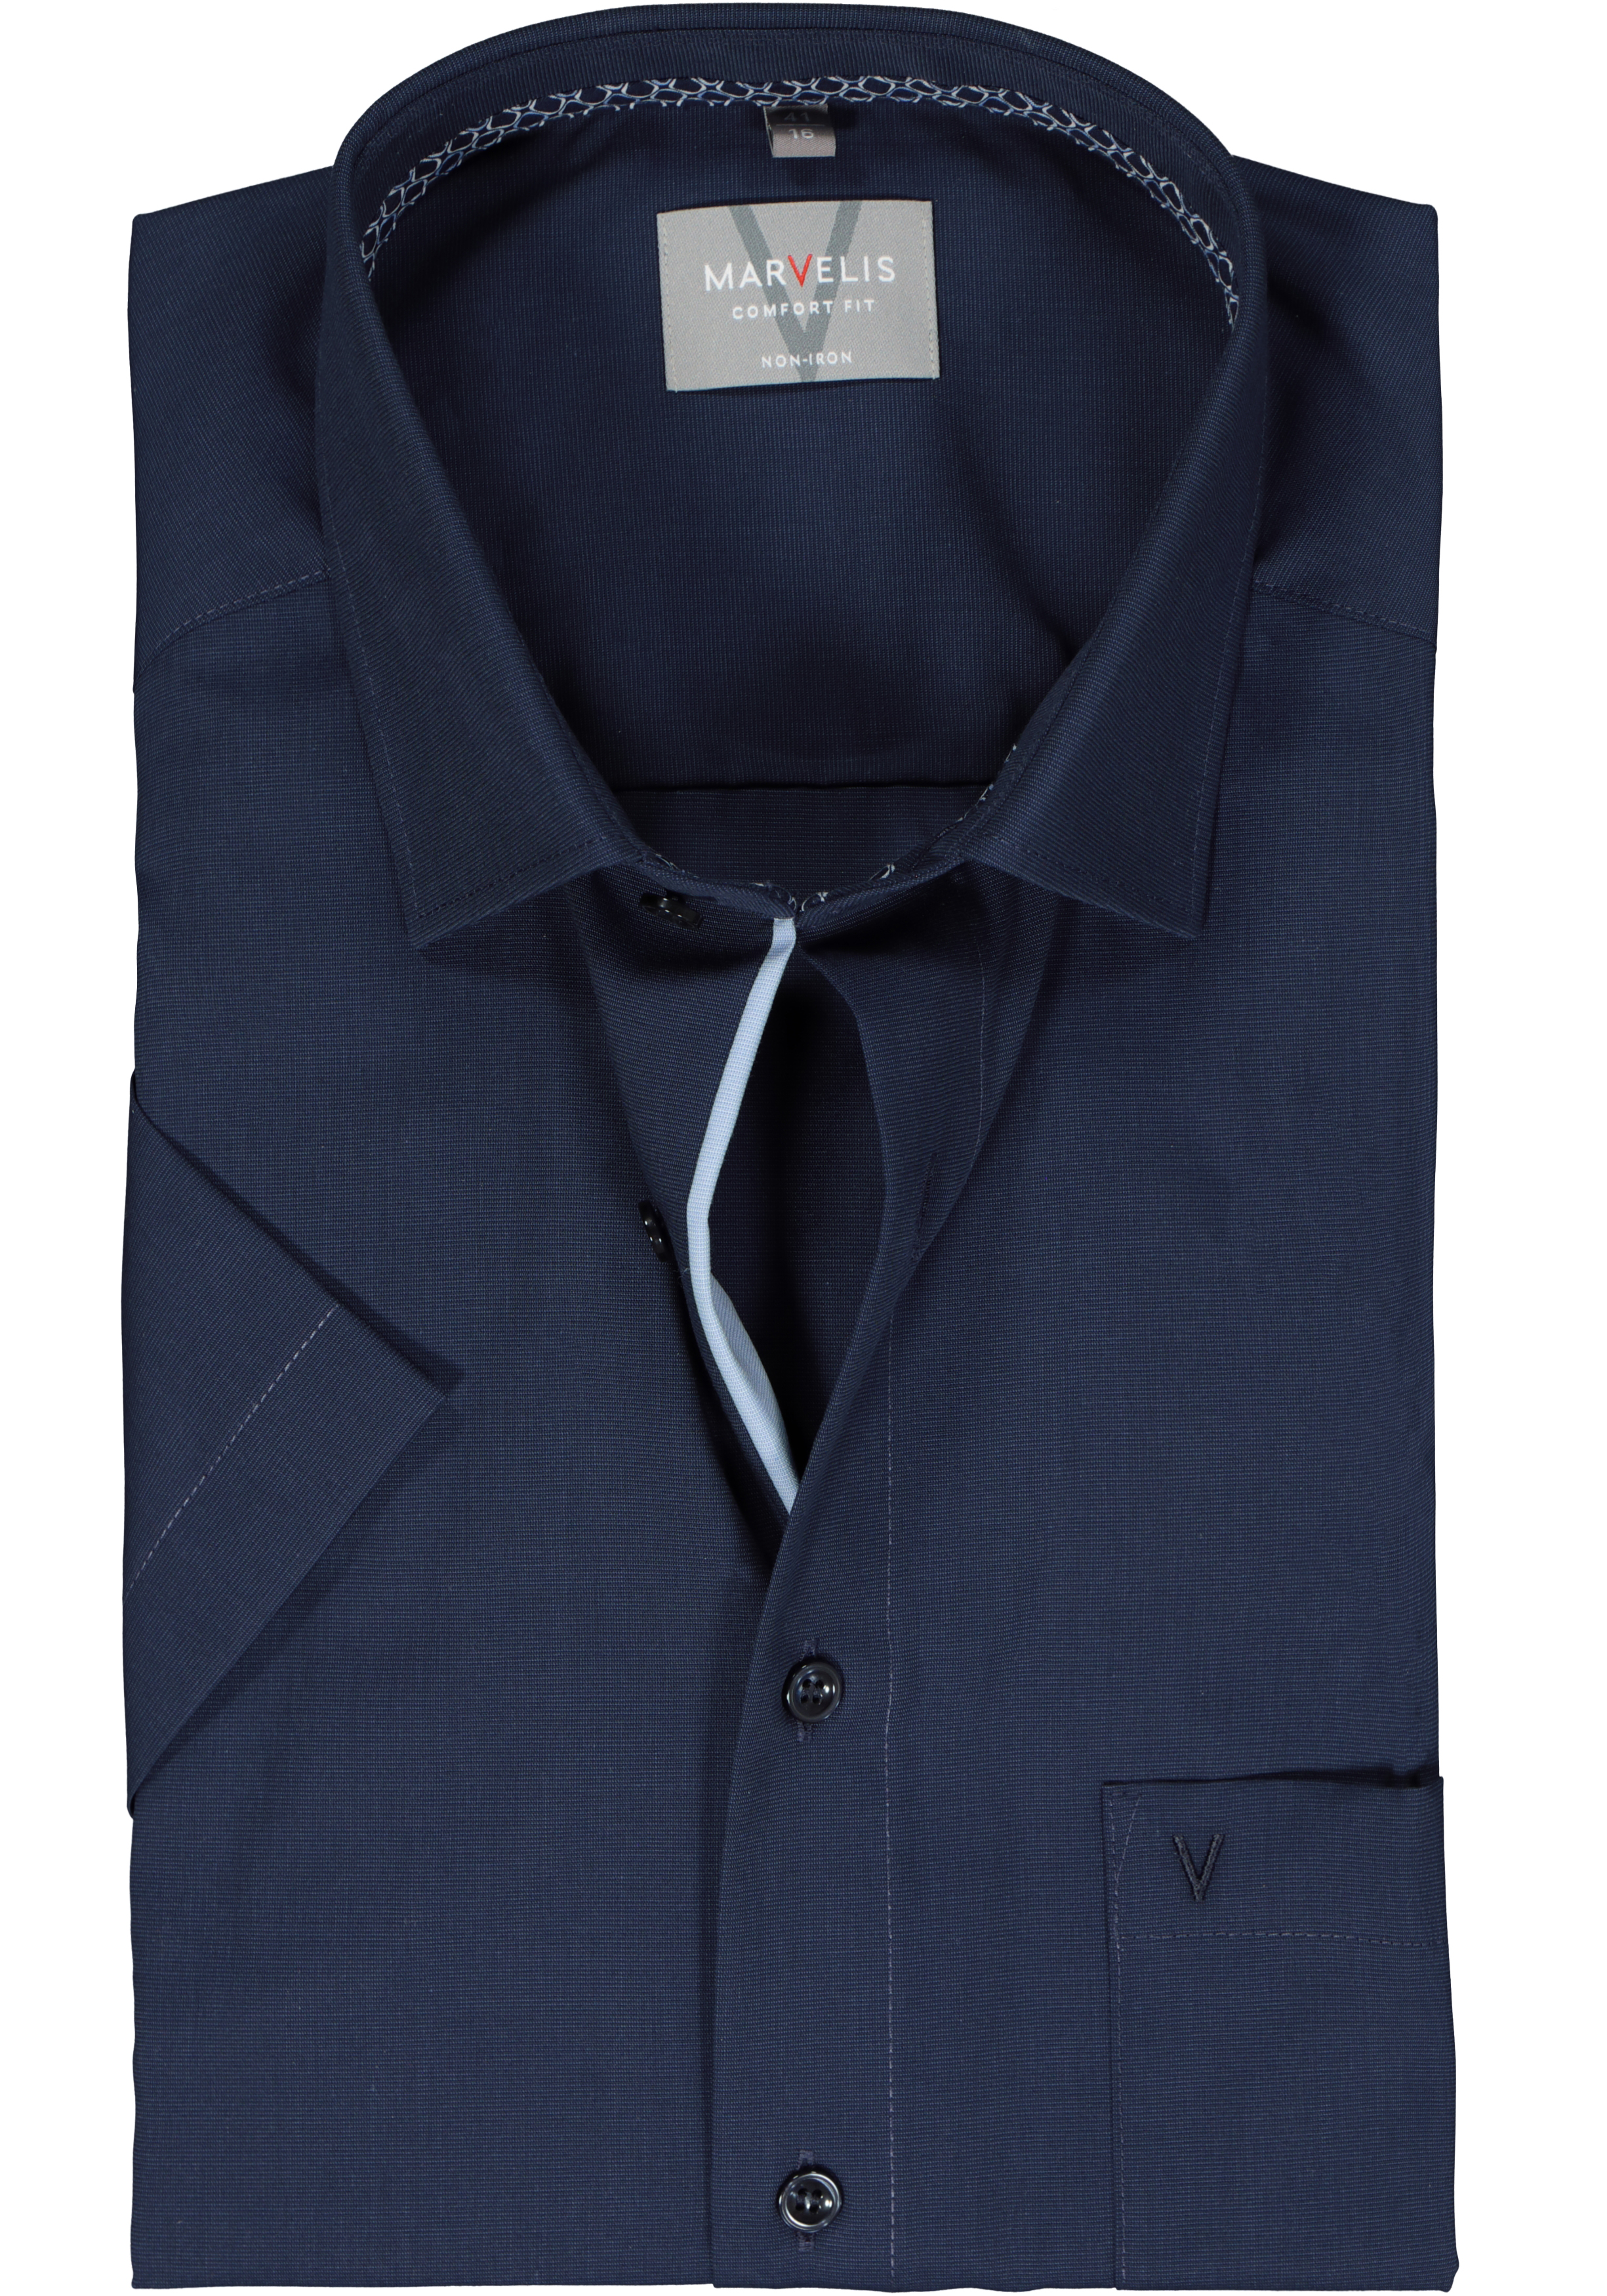 MARVELIS comfort fit overhemd, korte mouw, structuur, lichtblauw